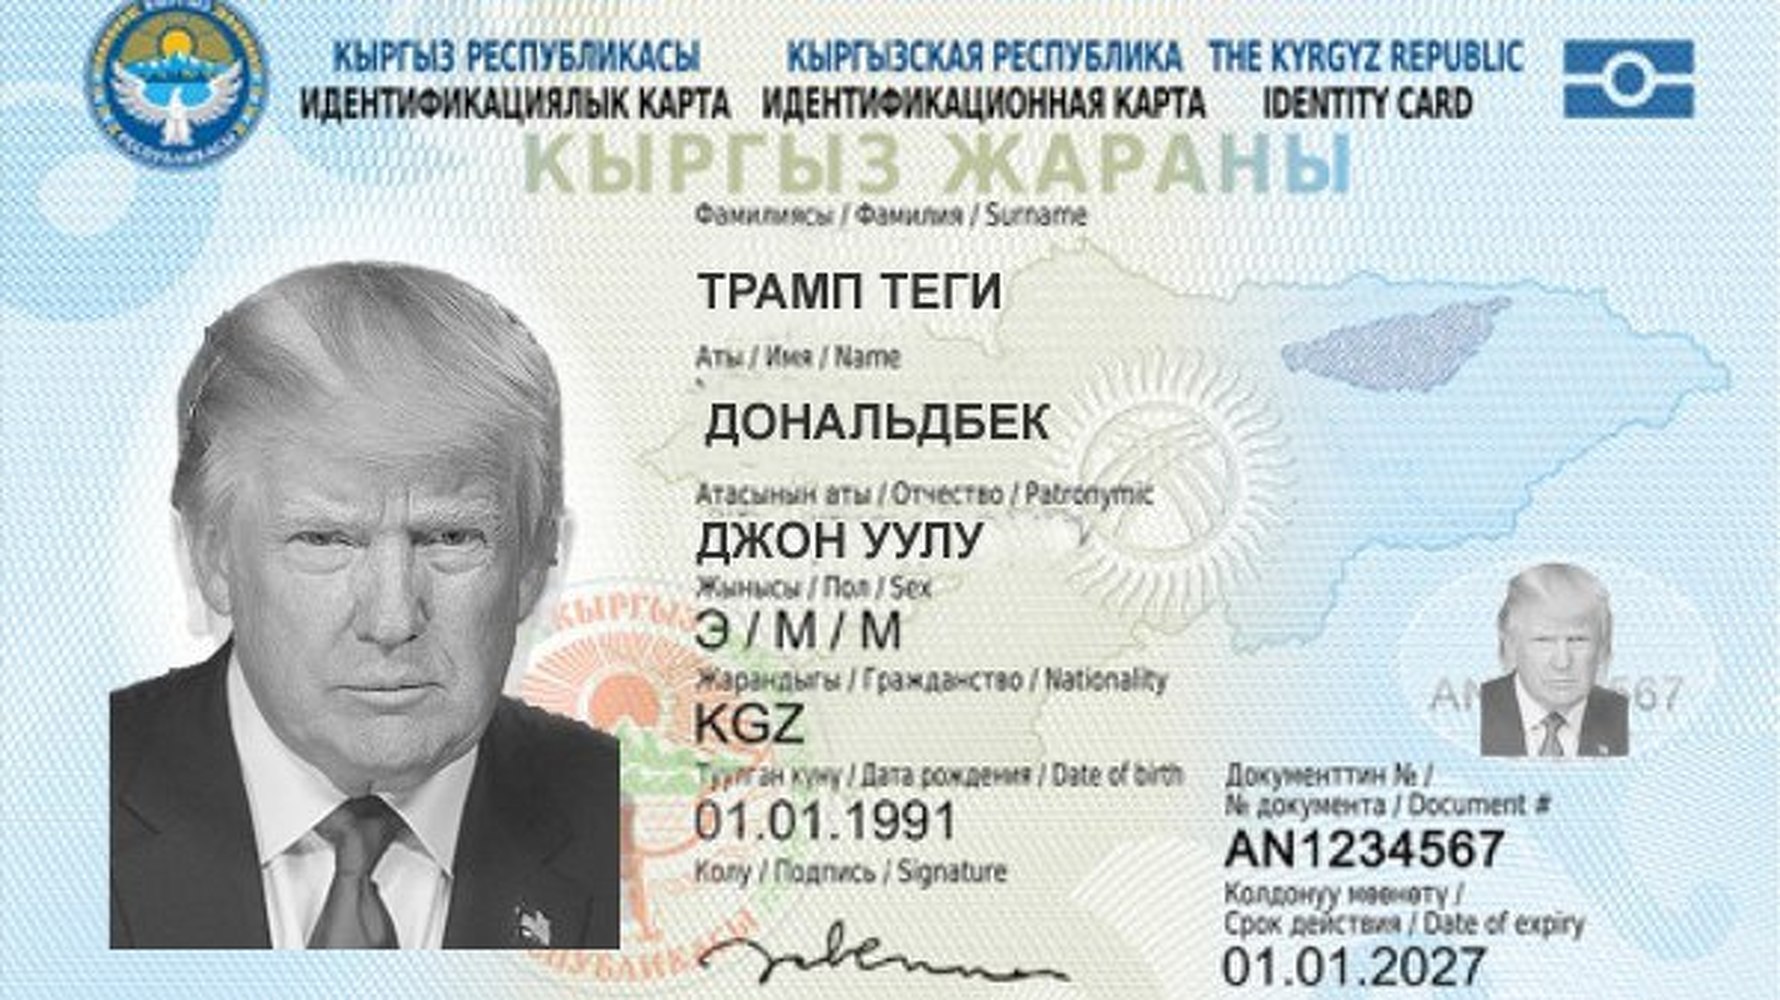 Кр вый. ID карта Киргизии.